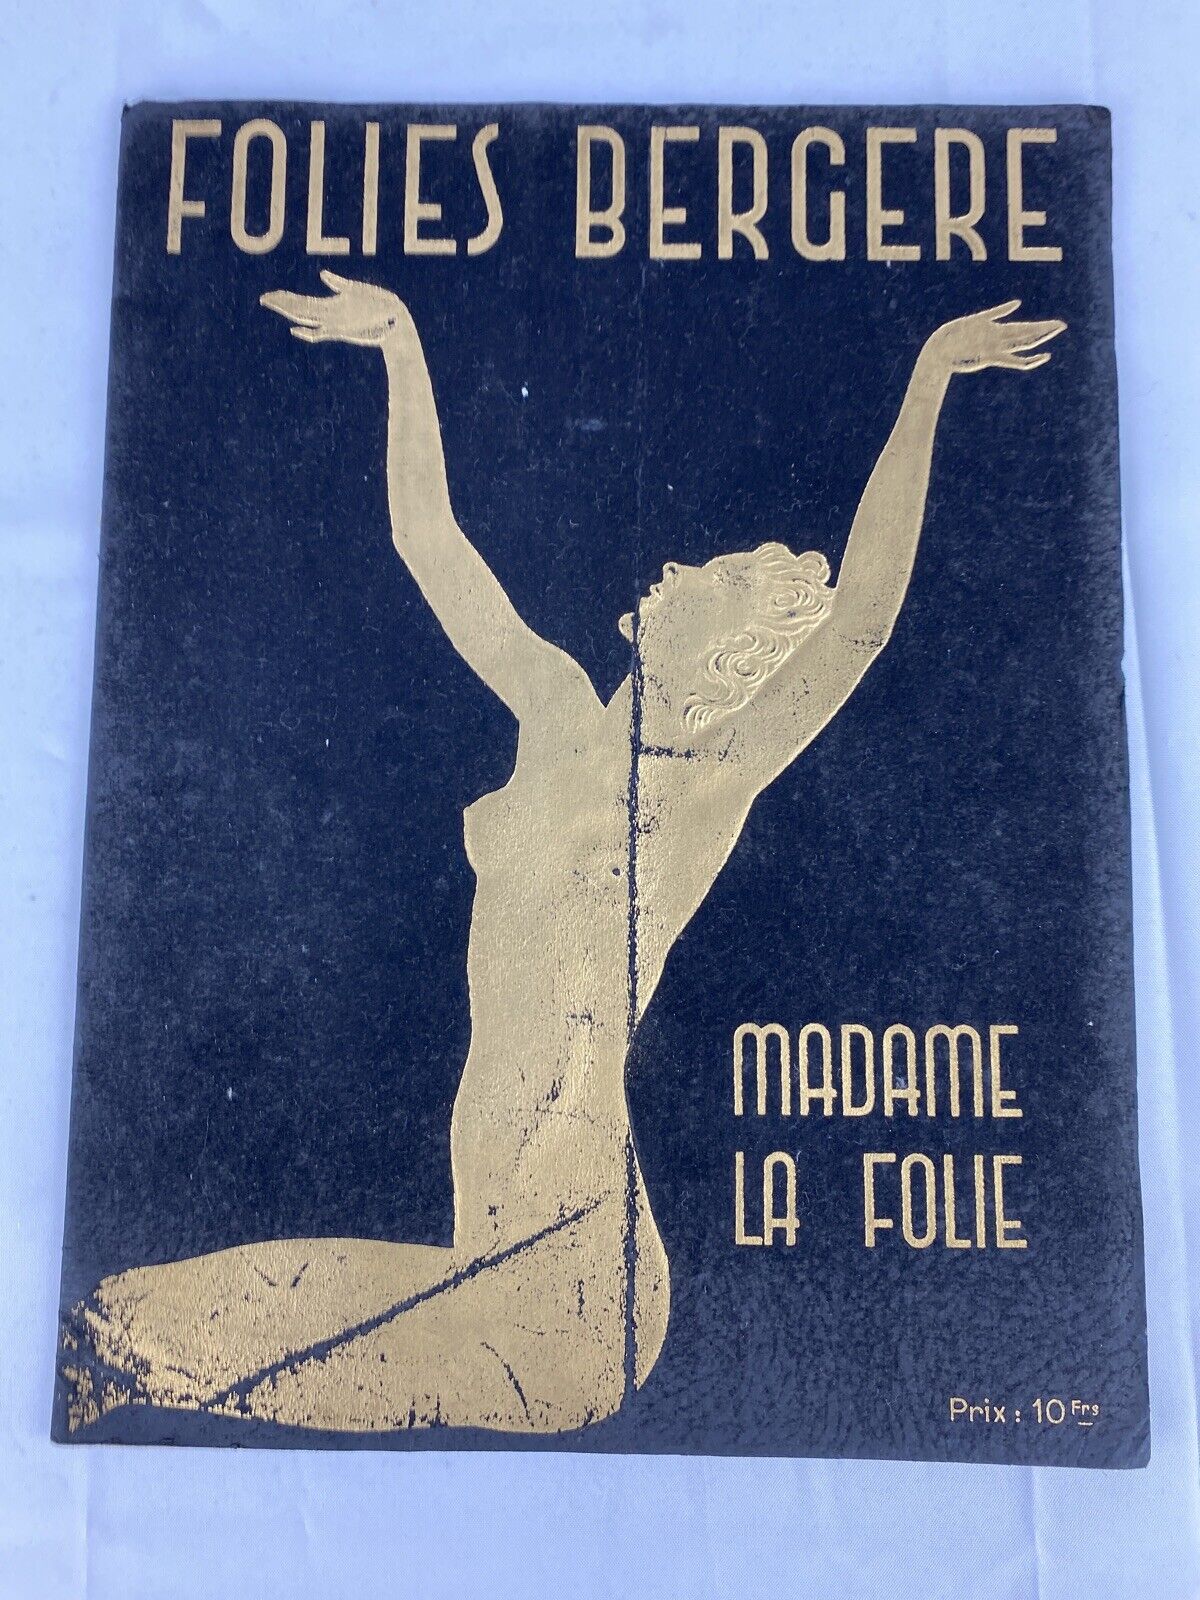 Folies Bergere program French Madame La Folie Studio Harcourt Paris